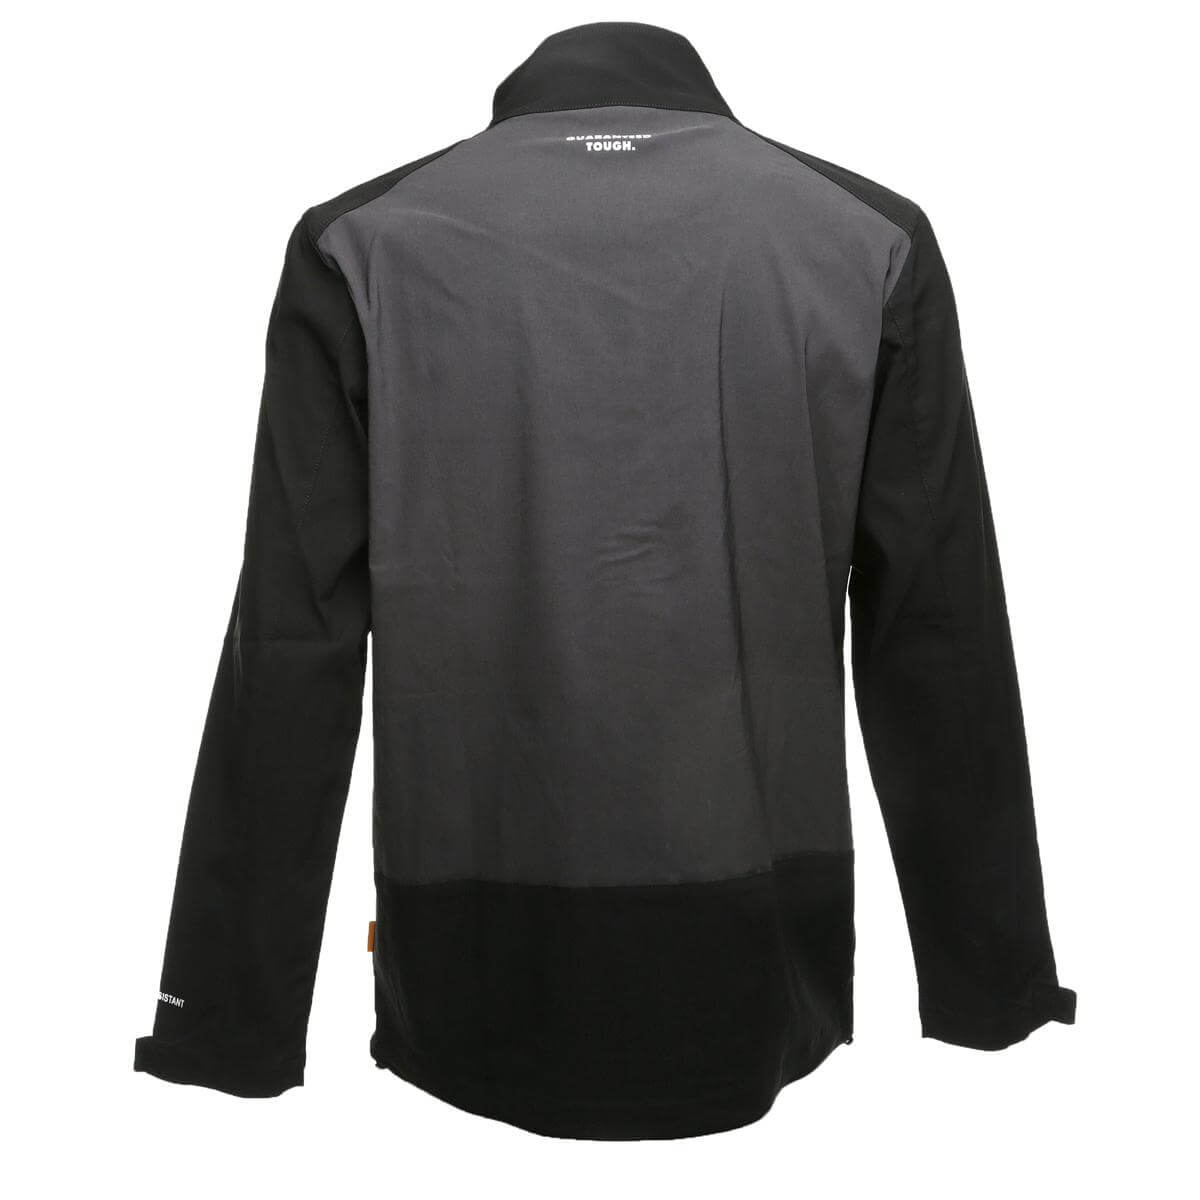 DeWalt Sydney Stretch Jacket Grey Black Back #colour_grey-black